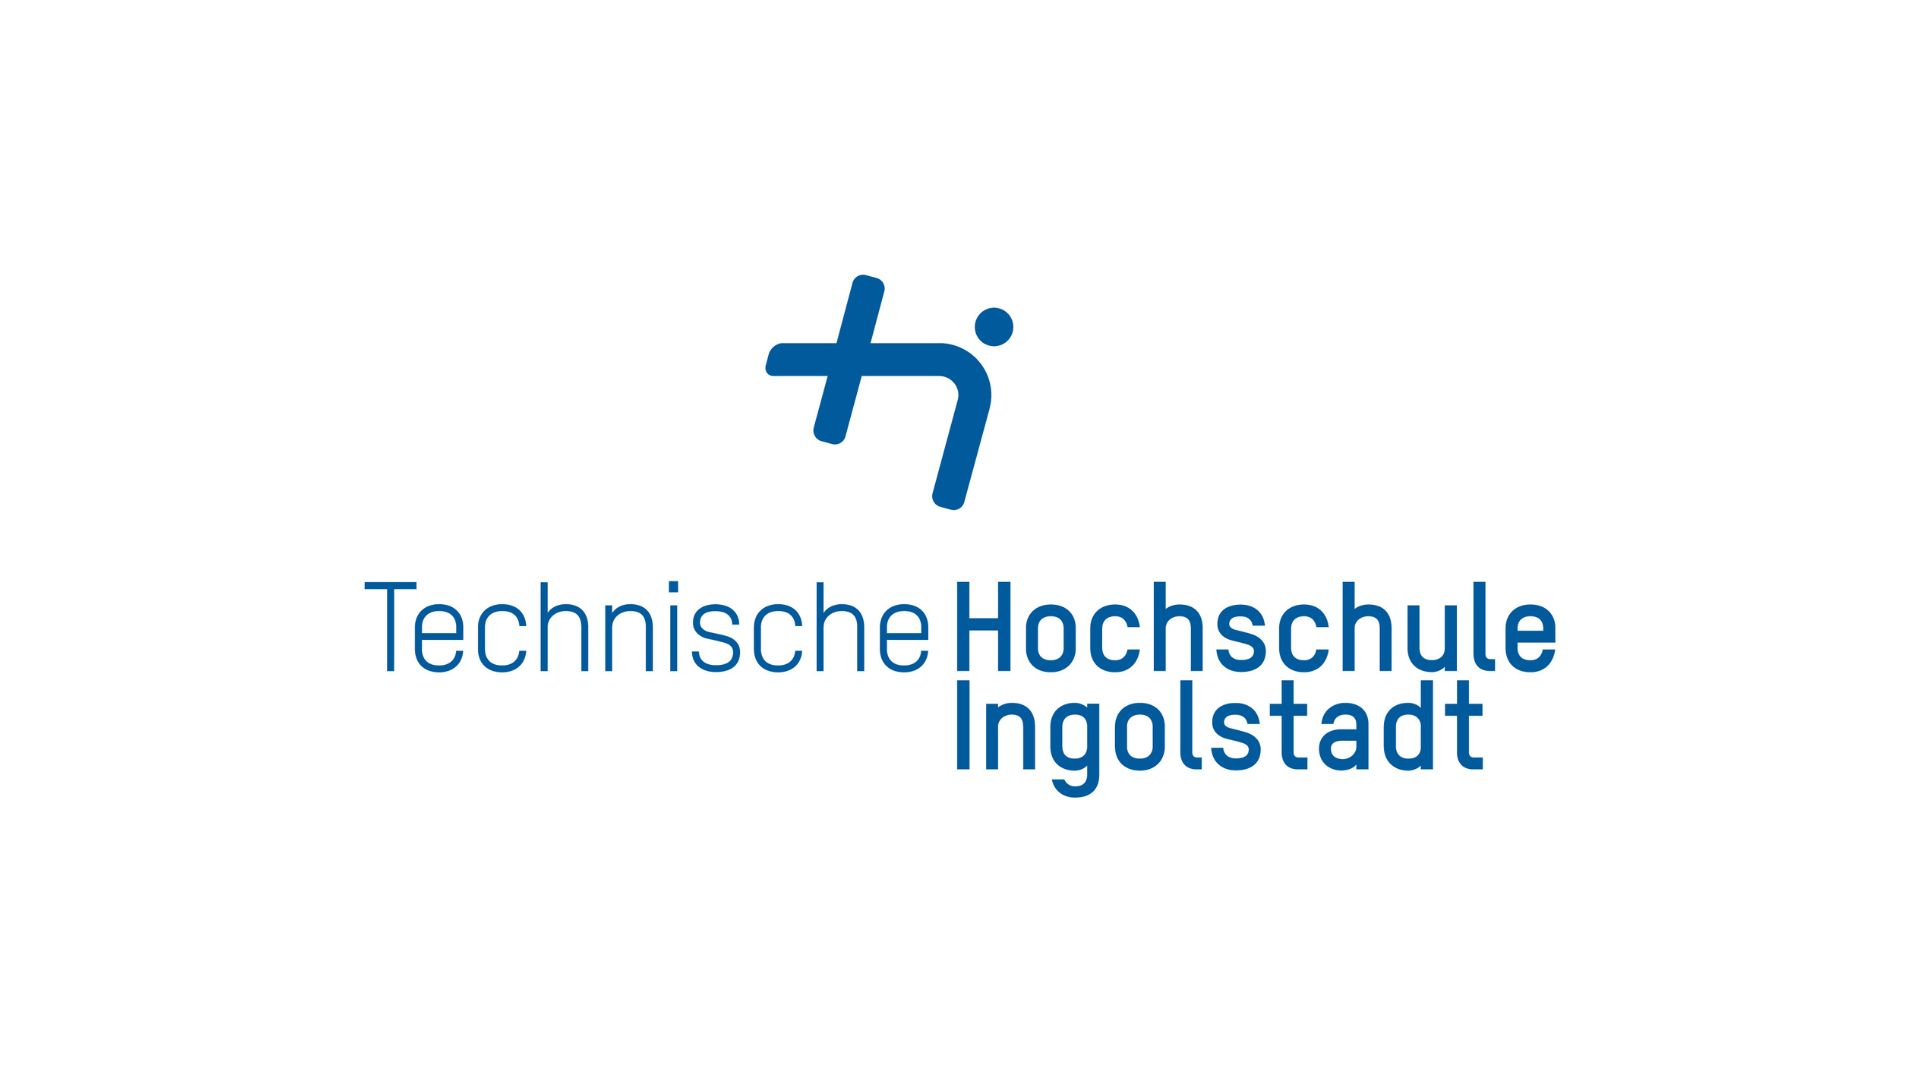 Technische Hochschule Ingolstadt (THI)